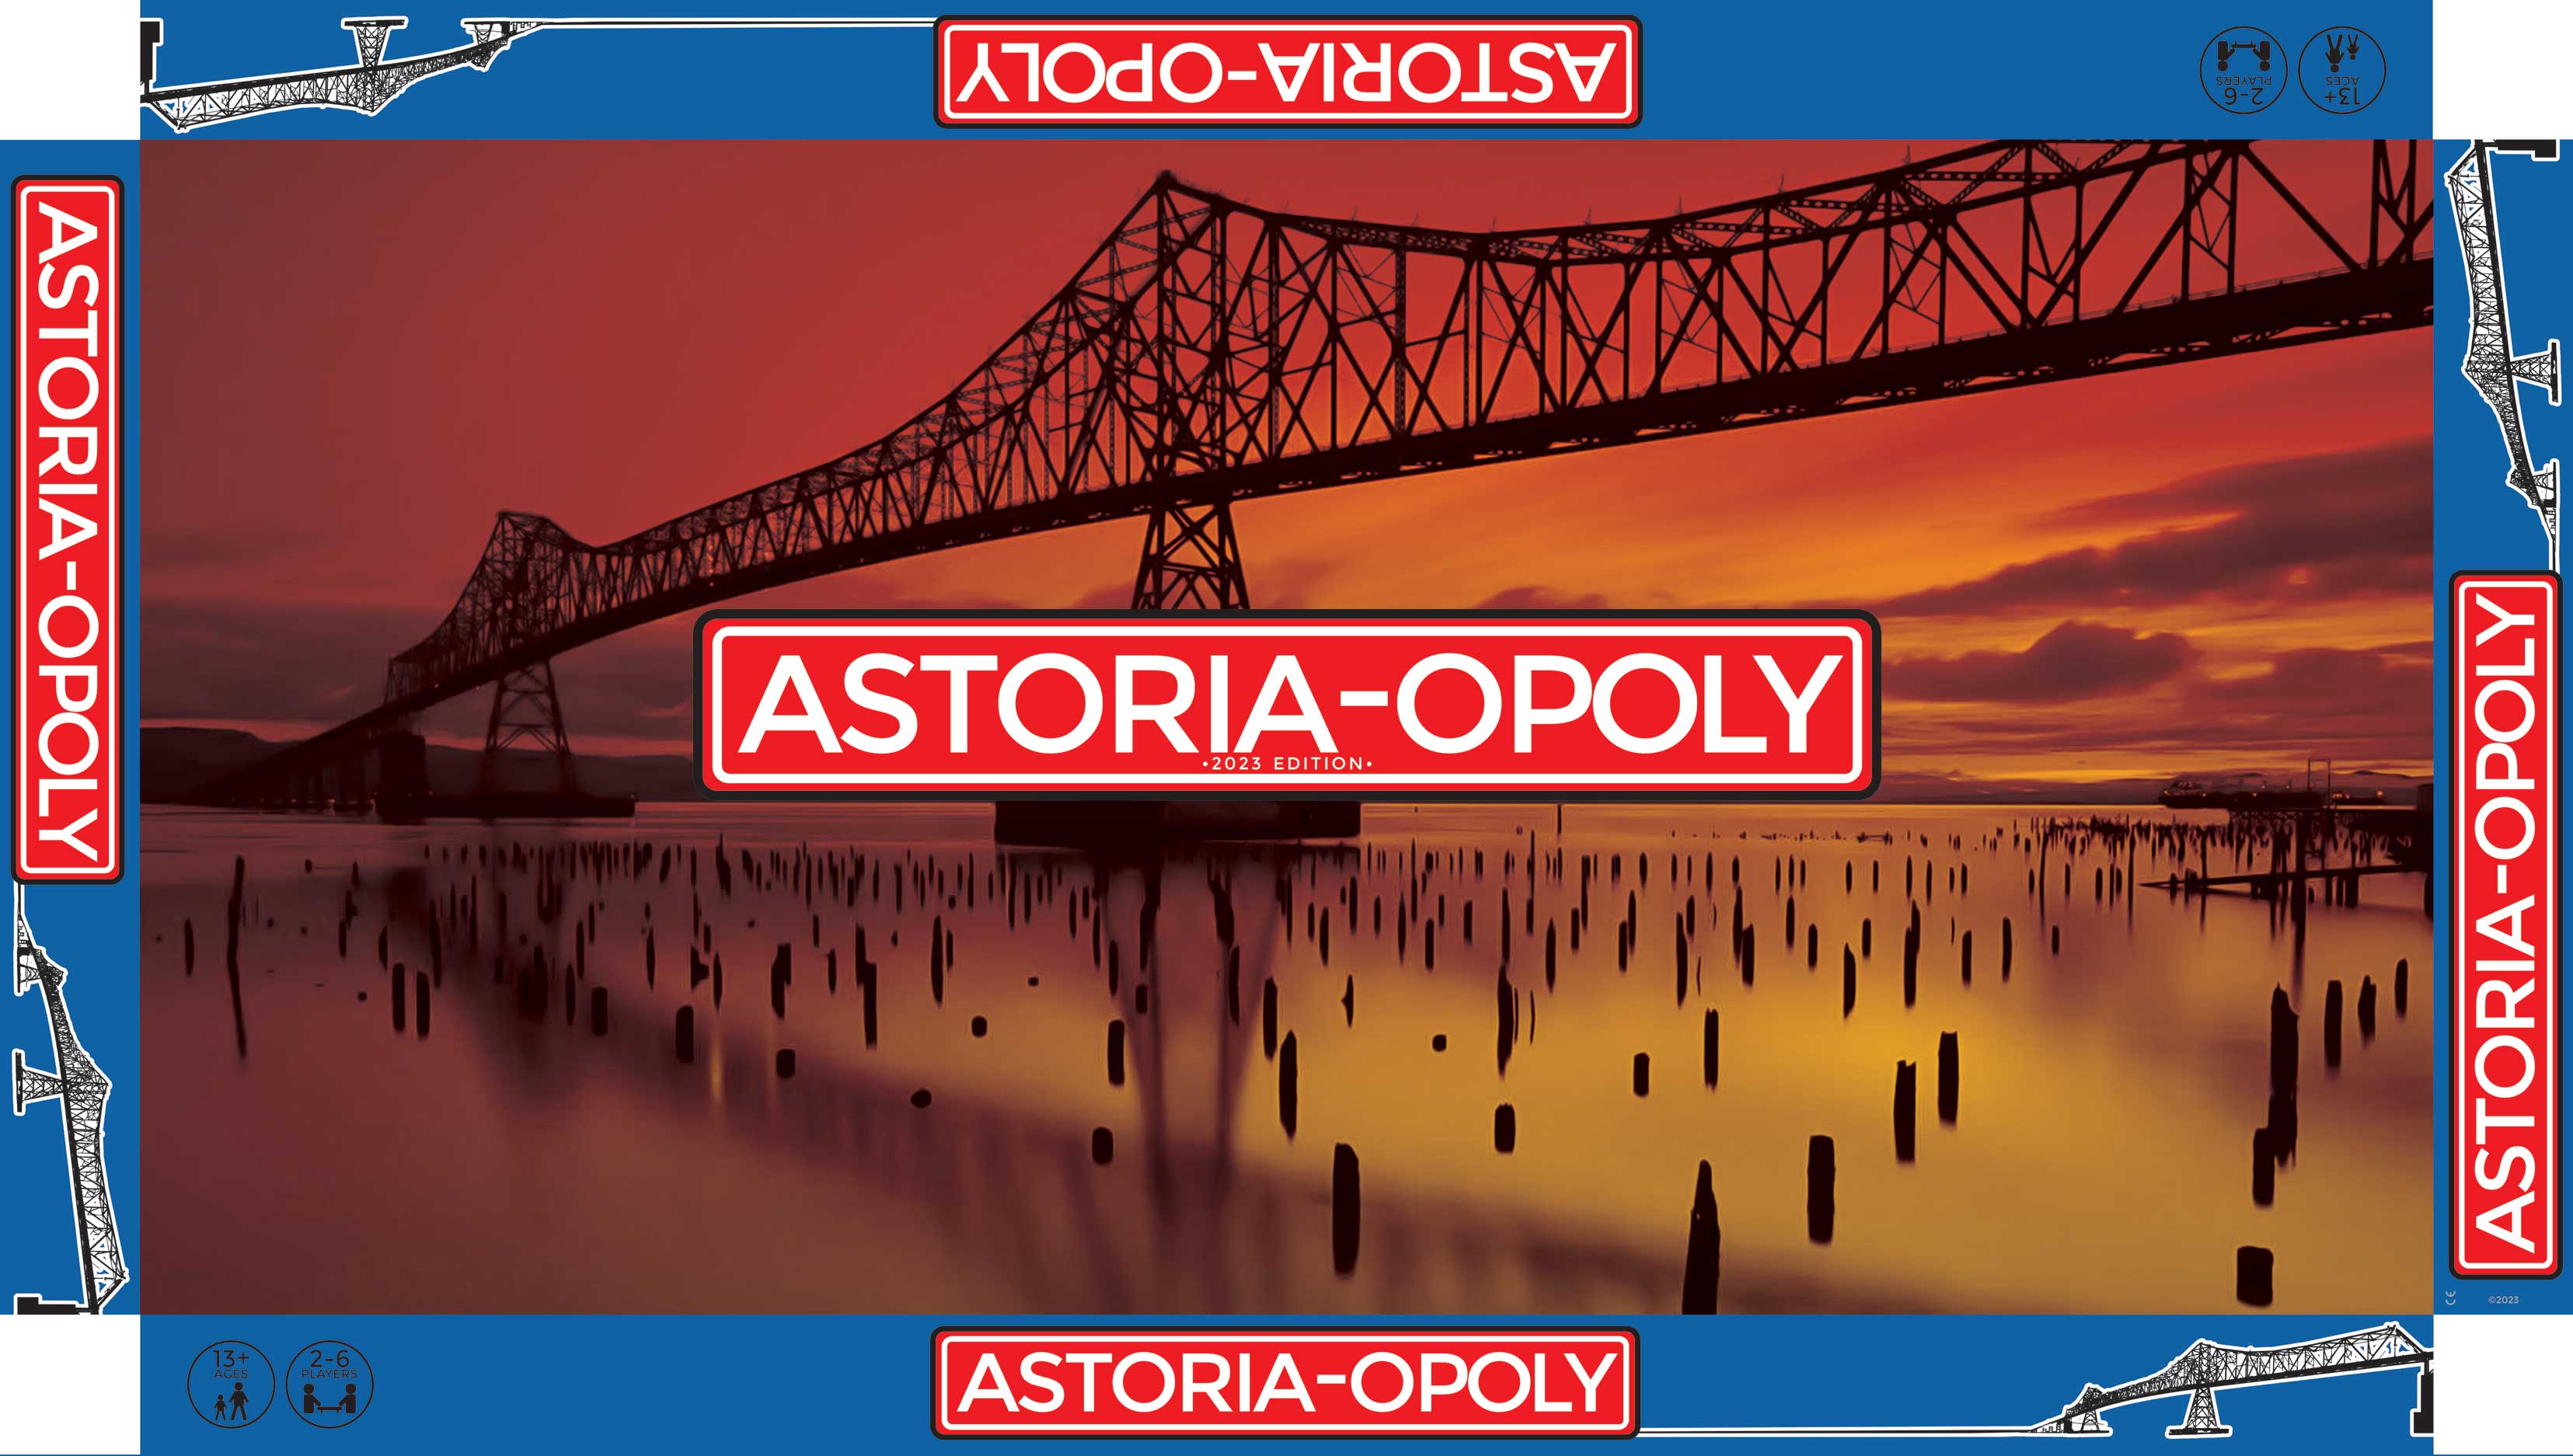 Astoria-opoly Box